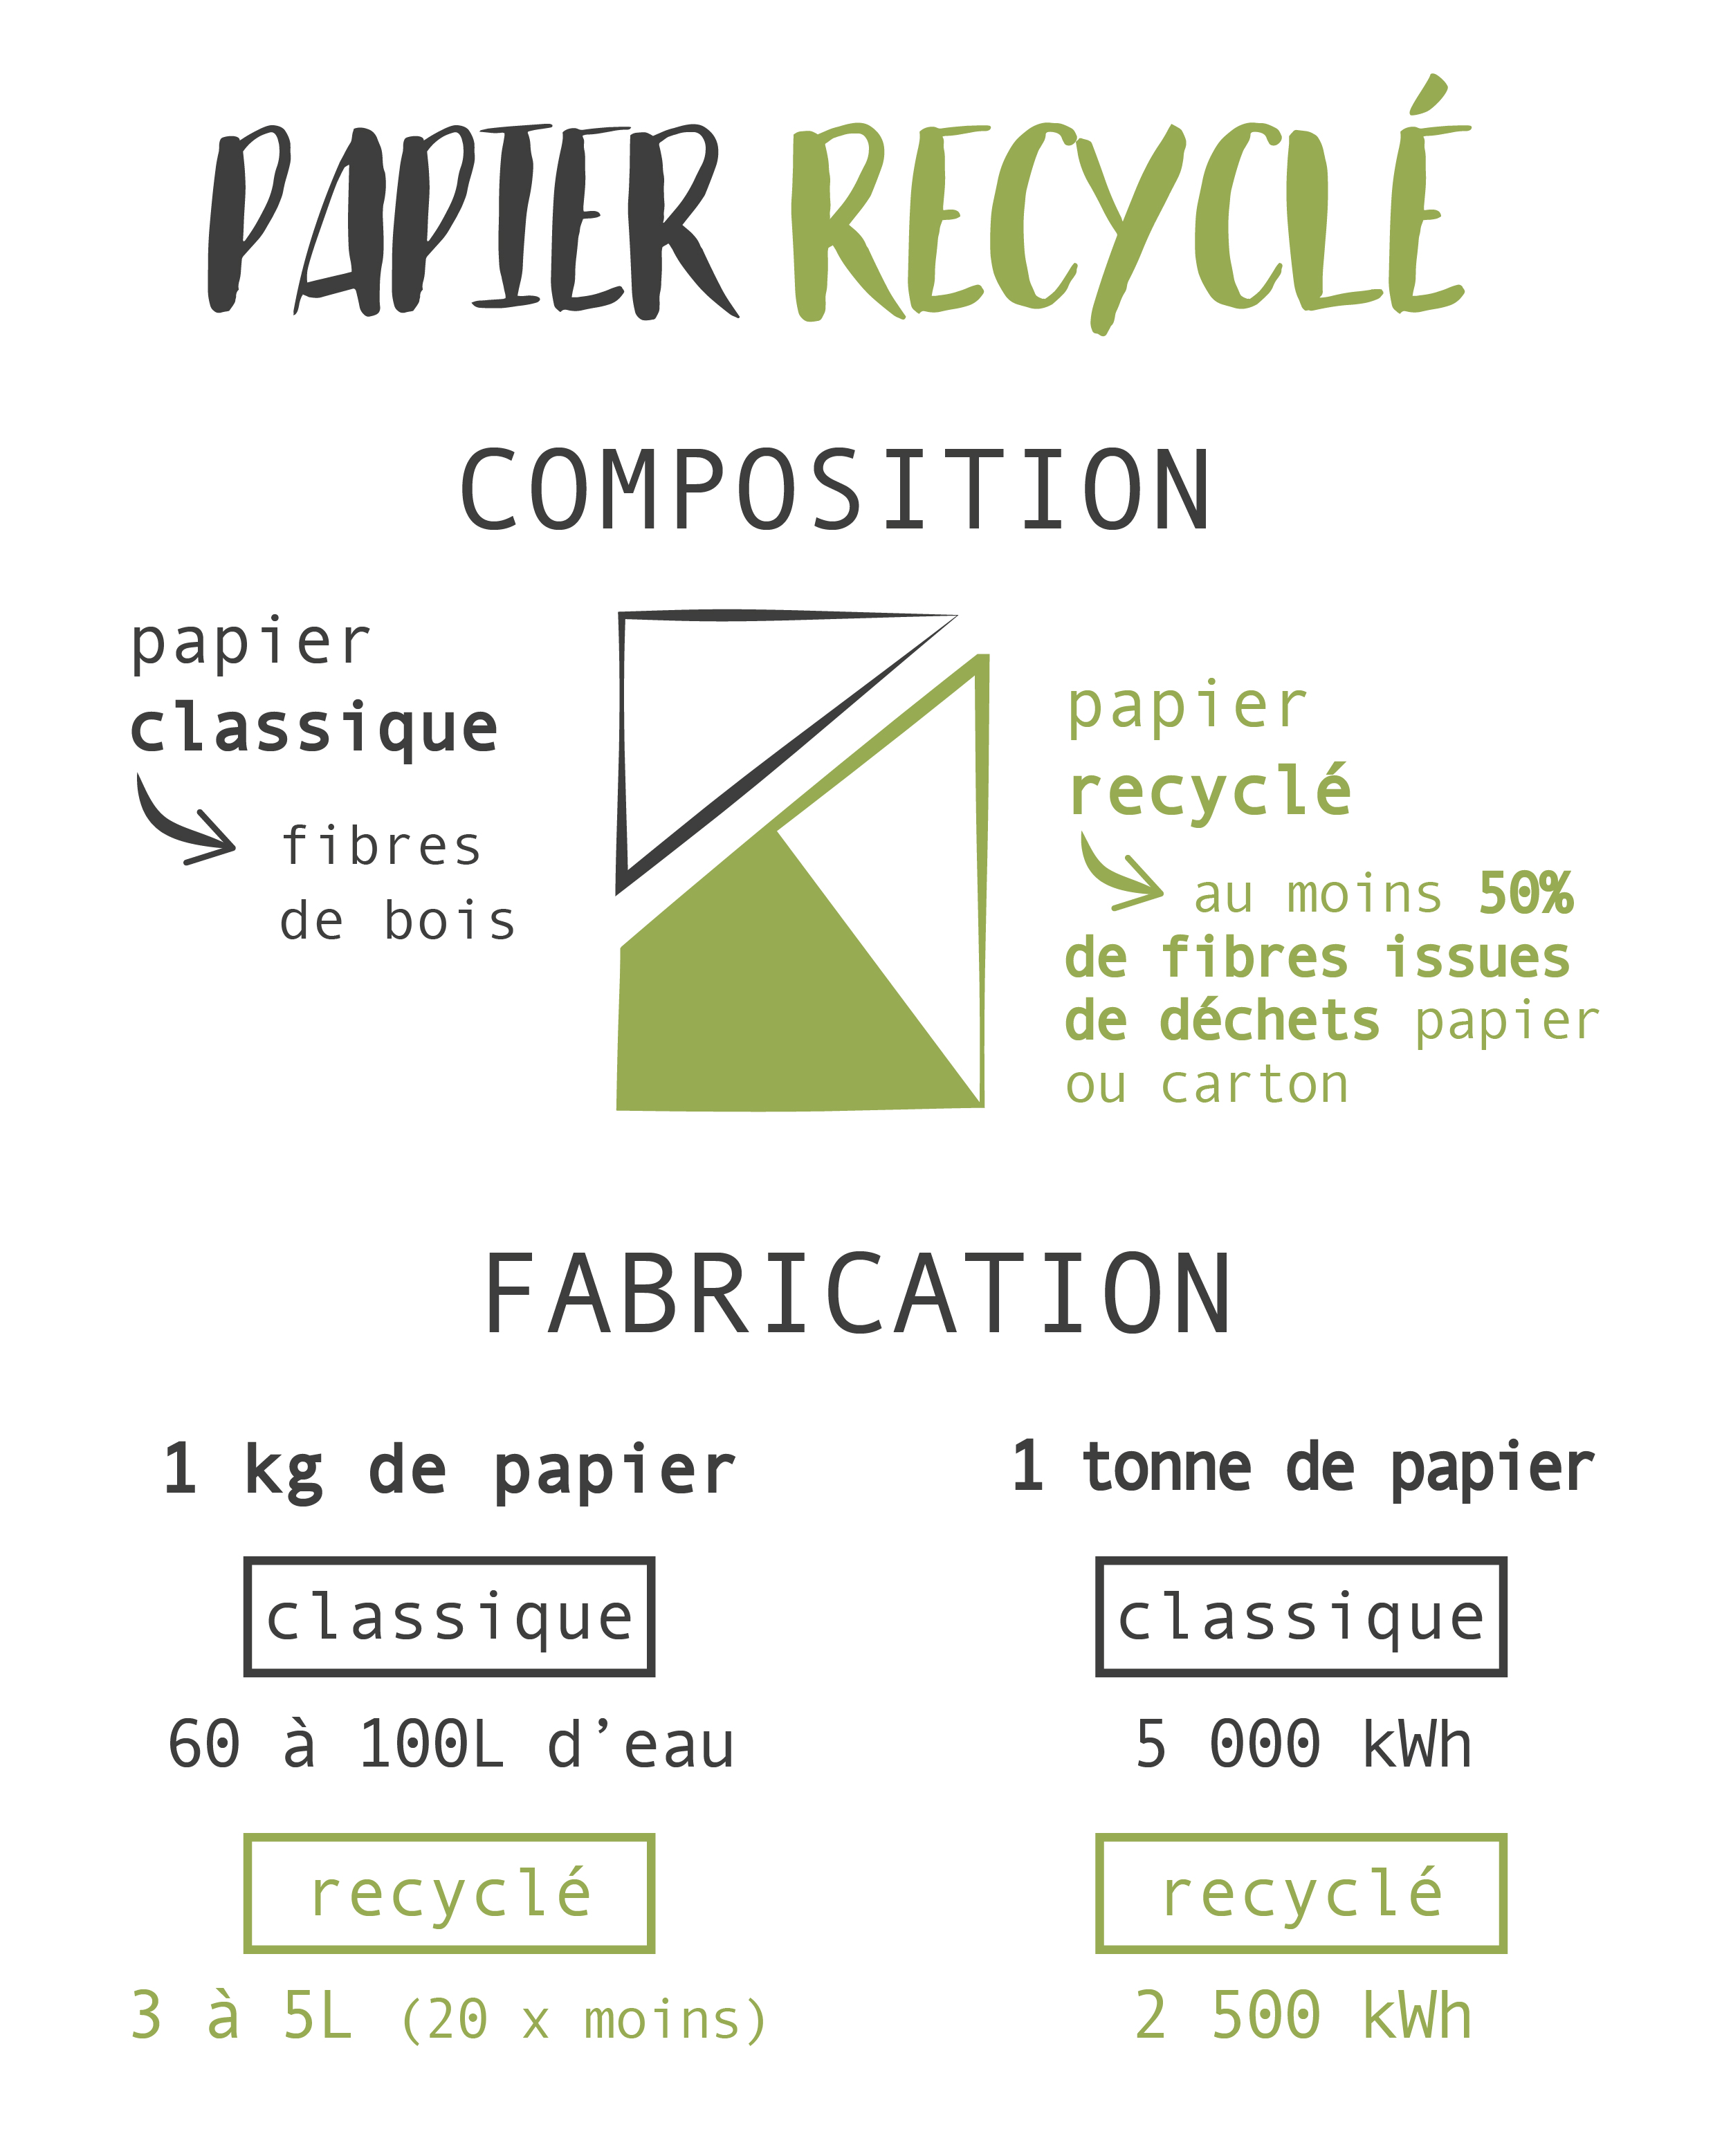 Papier recyclé : quels avantages par rapport à un papier blanc ?